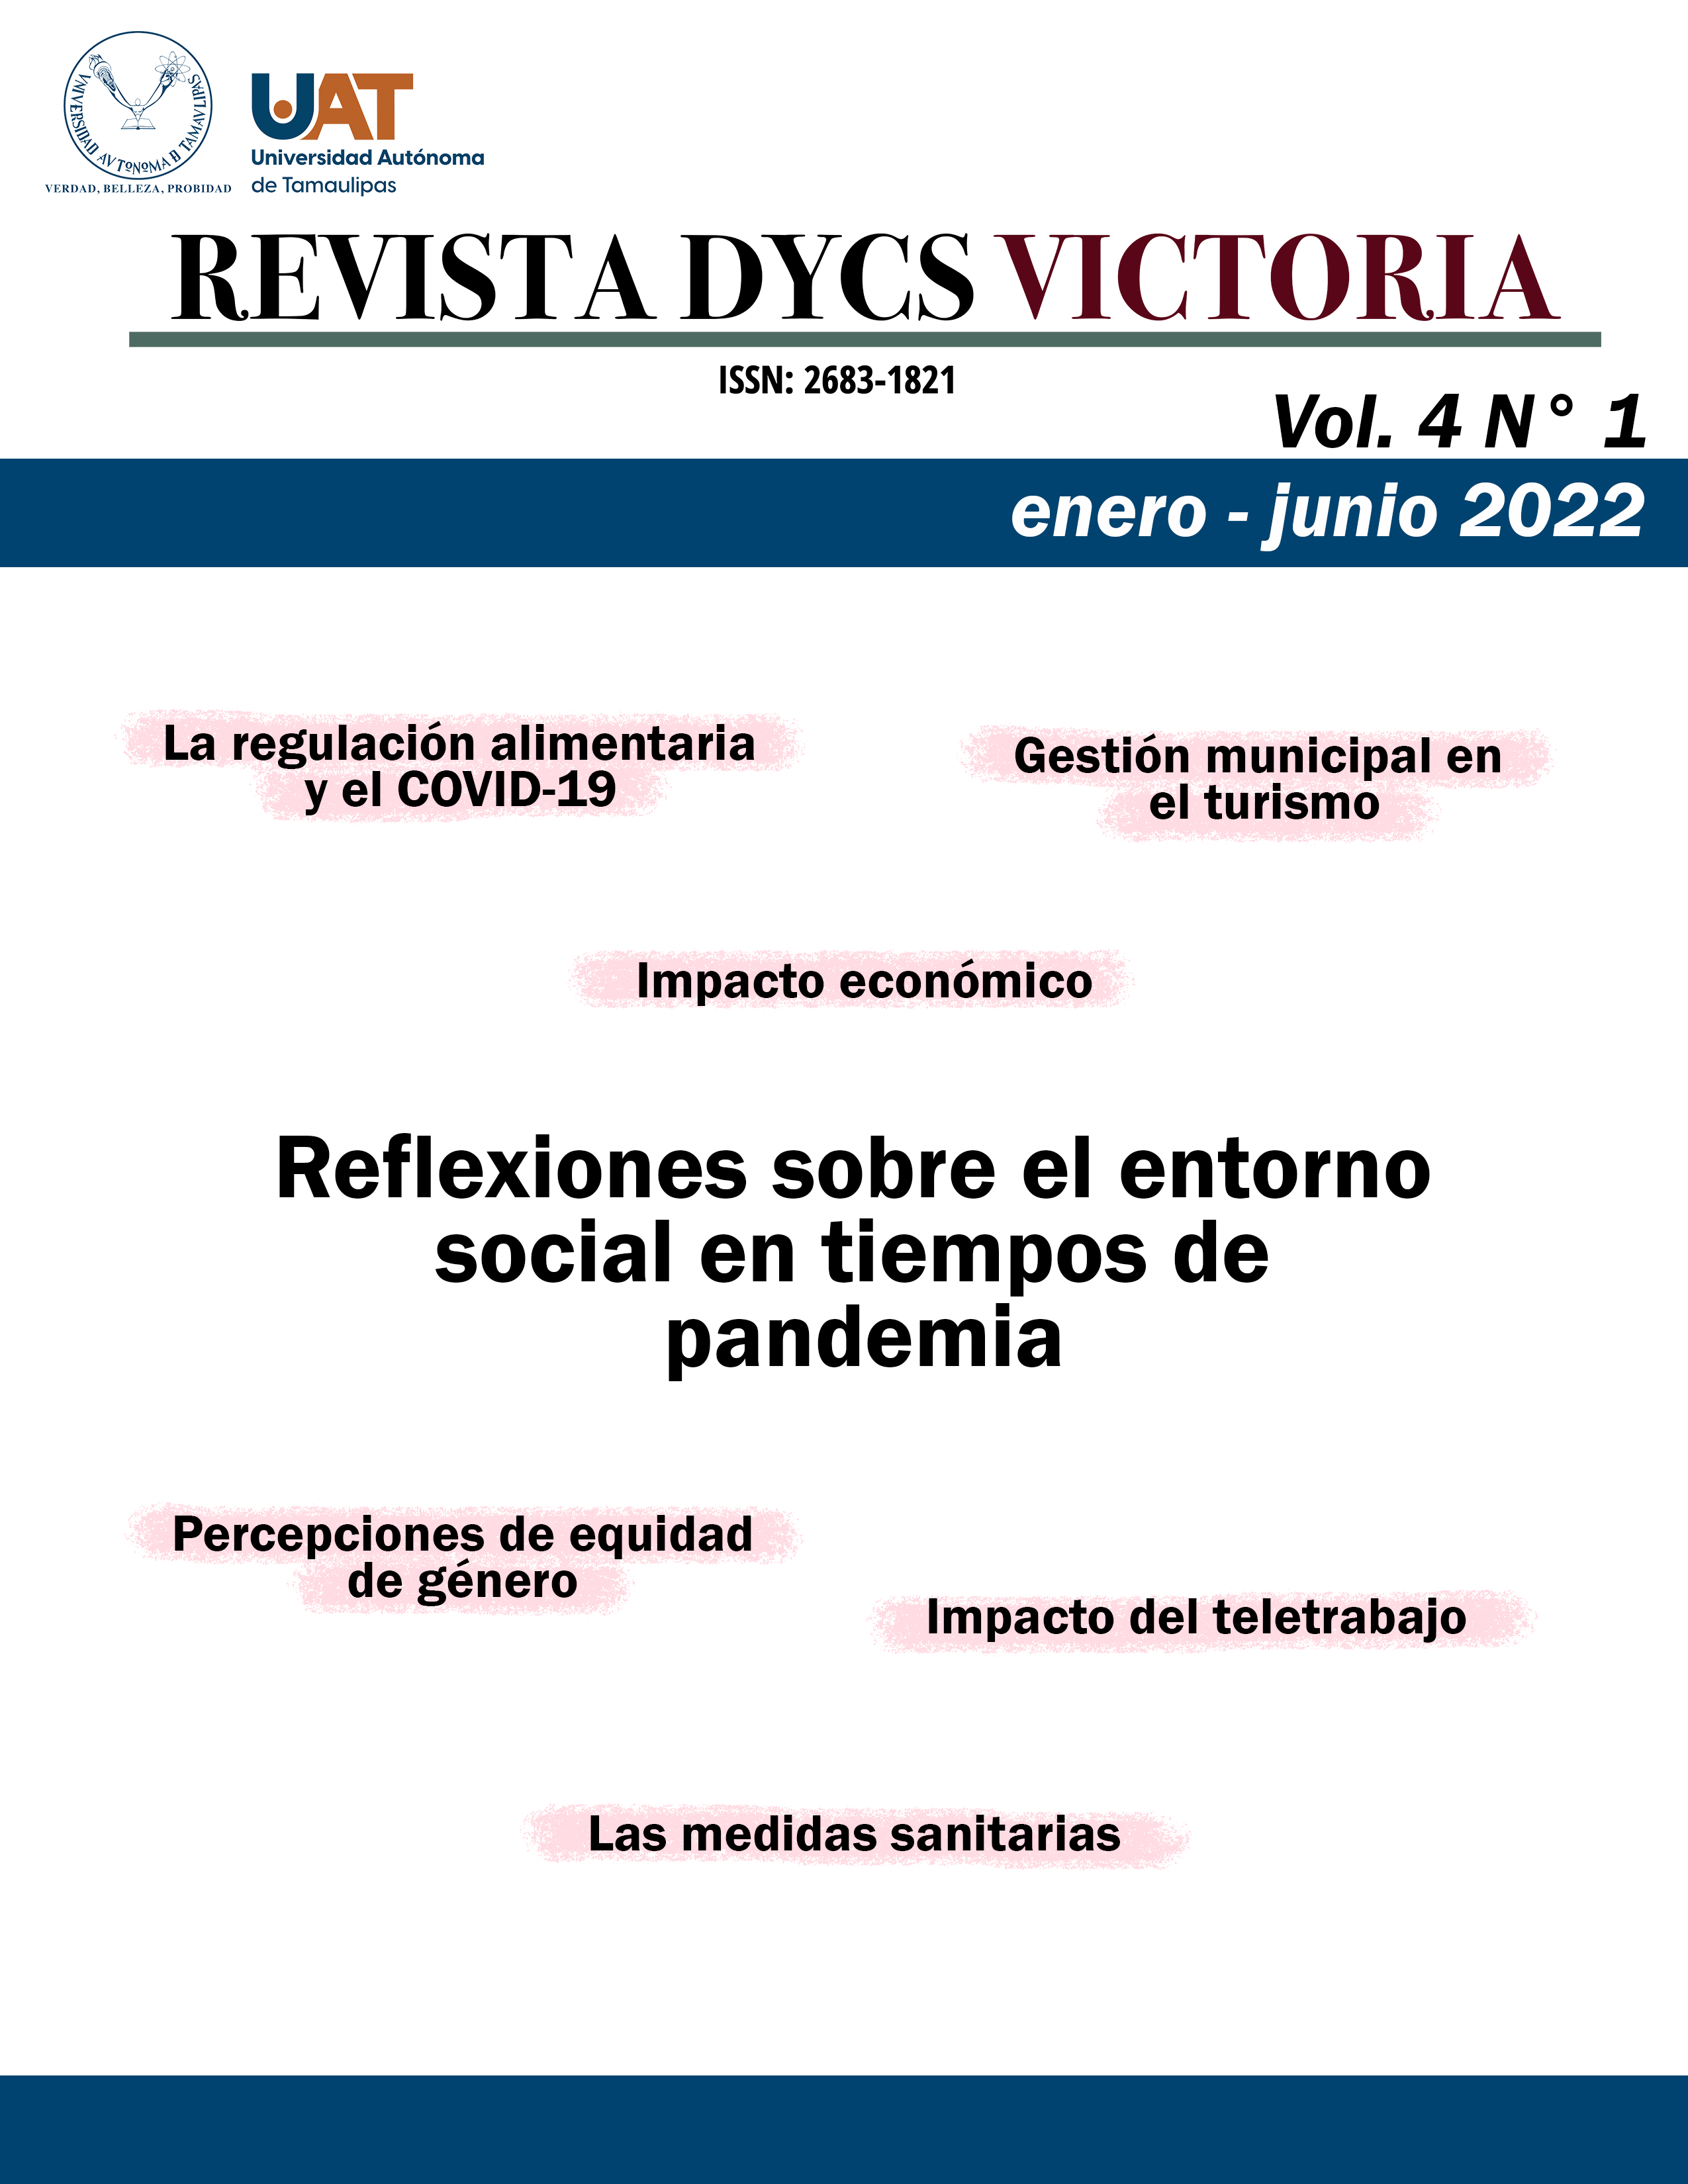 					Ver Vol. 4 N.° 1 (enero - junio 2022): Reflexiones sobre el entorno social en tiempos de pandemia
				